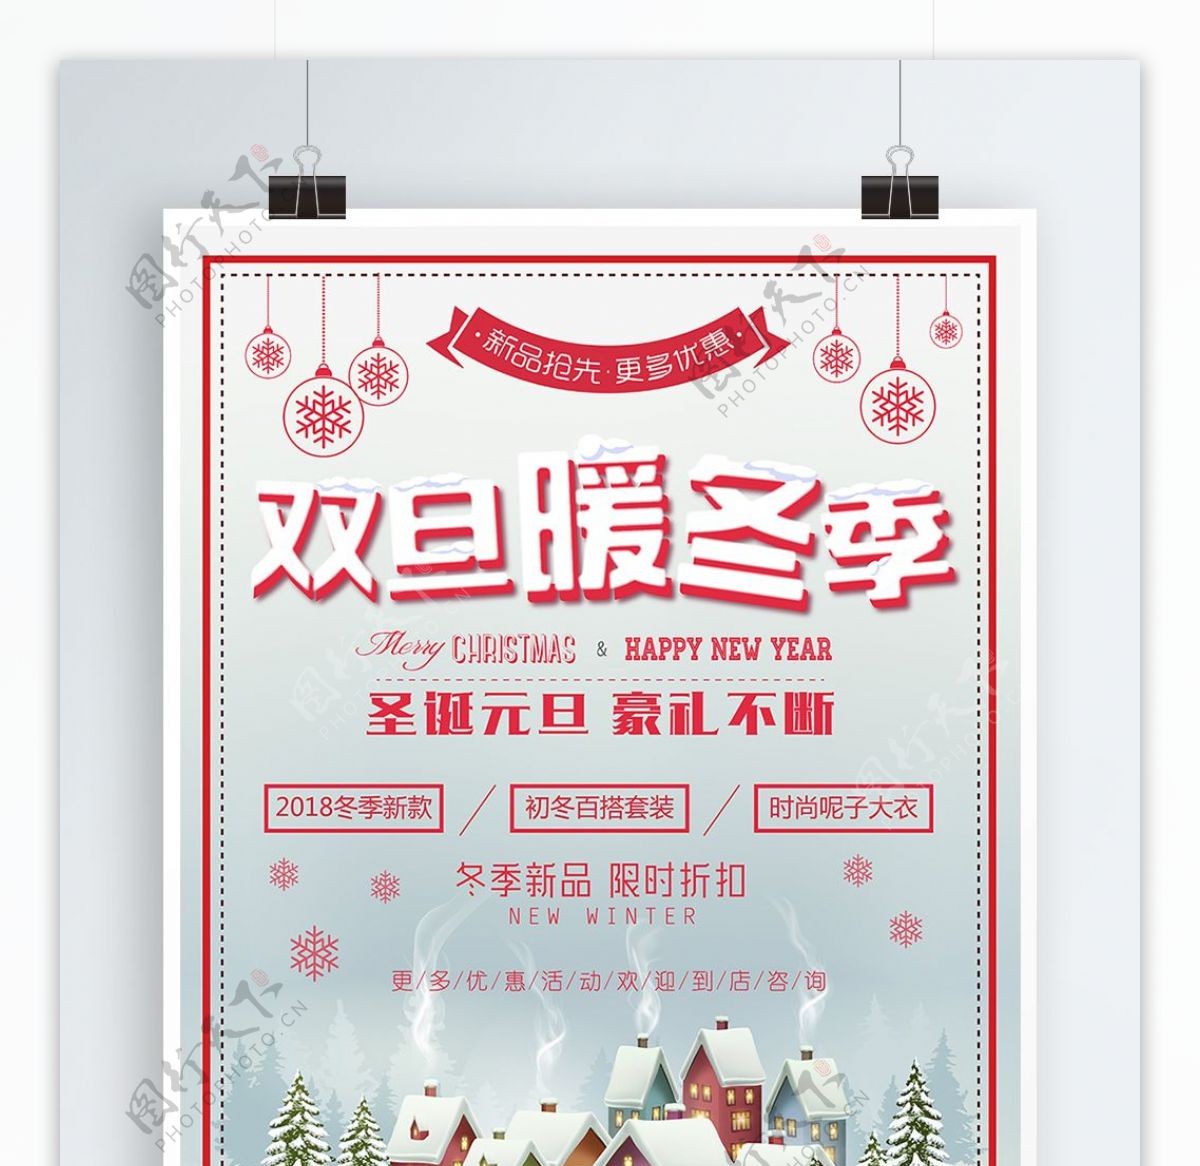 双旦暖冬季节日促销海报